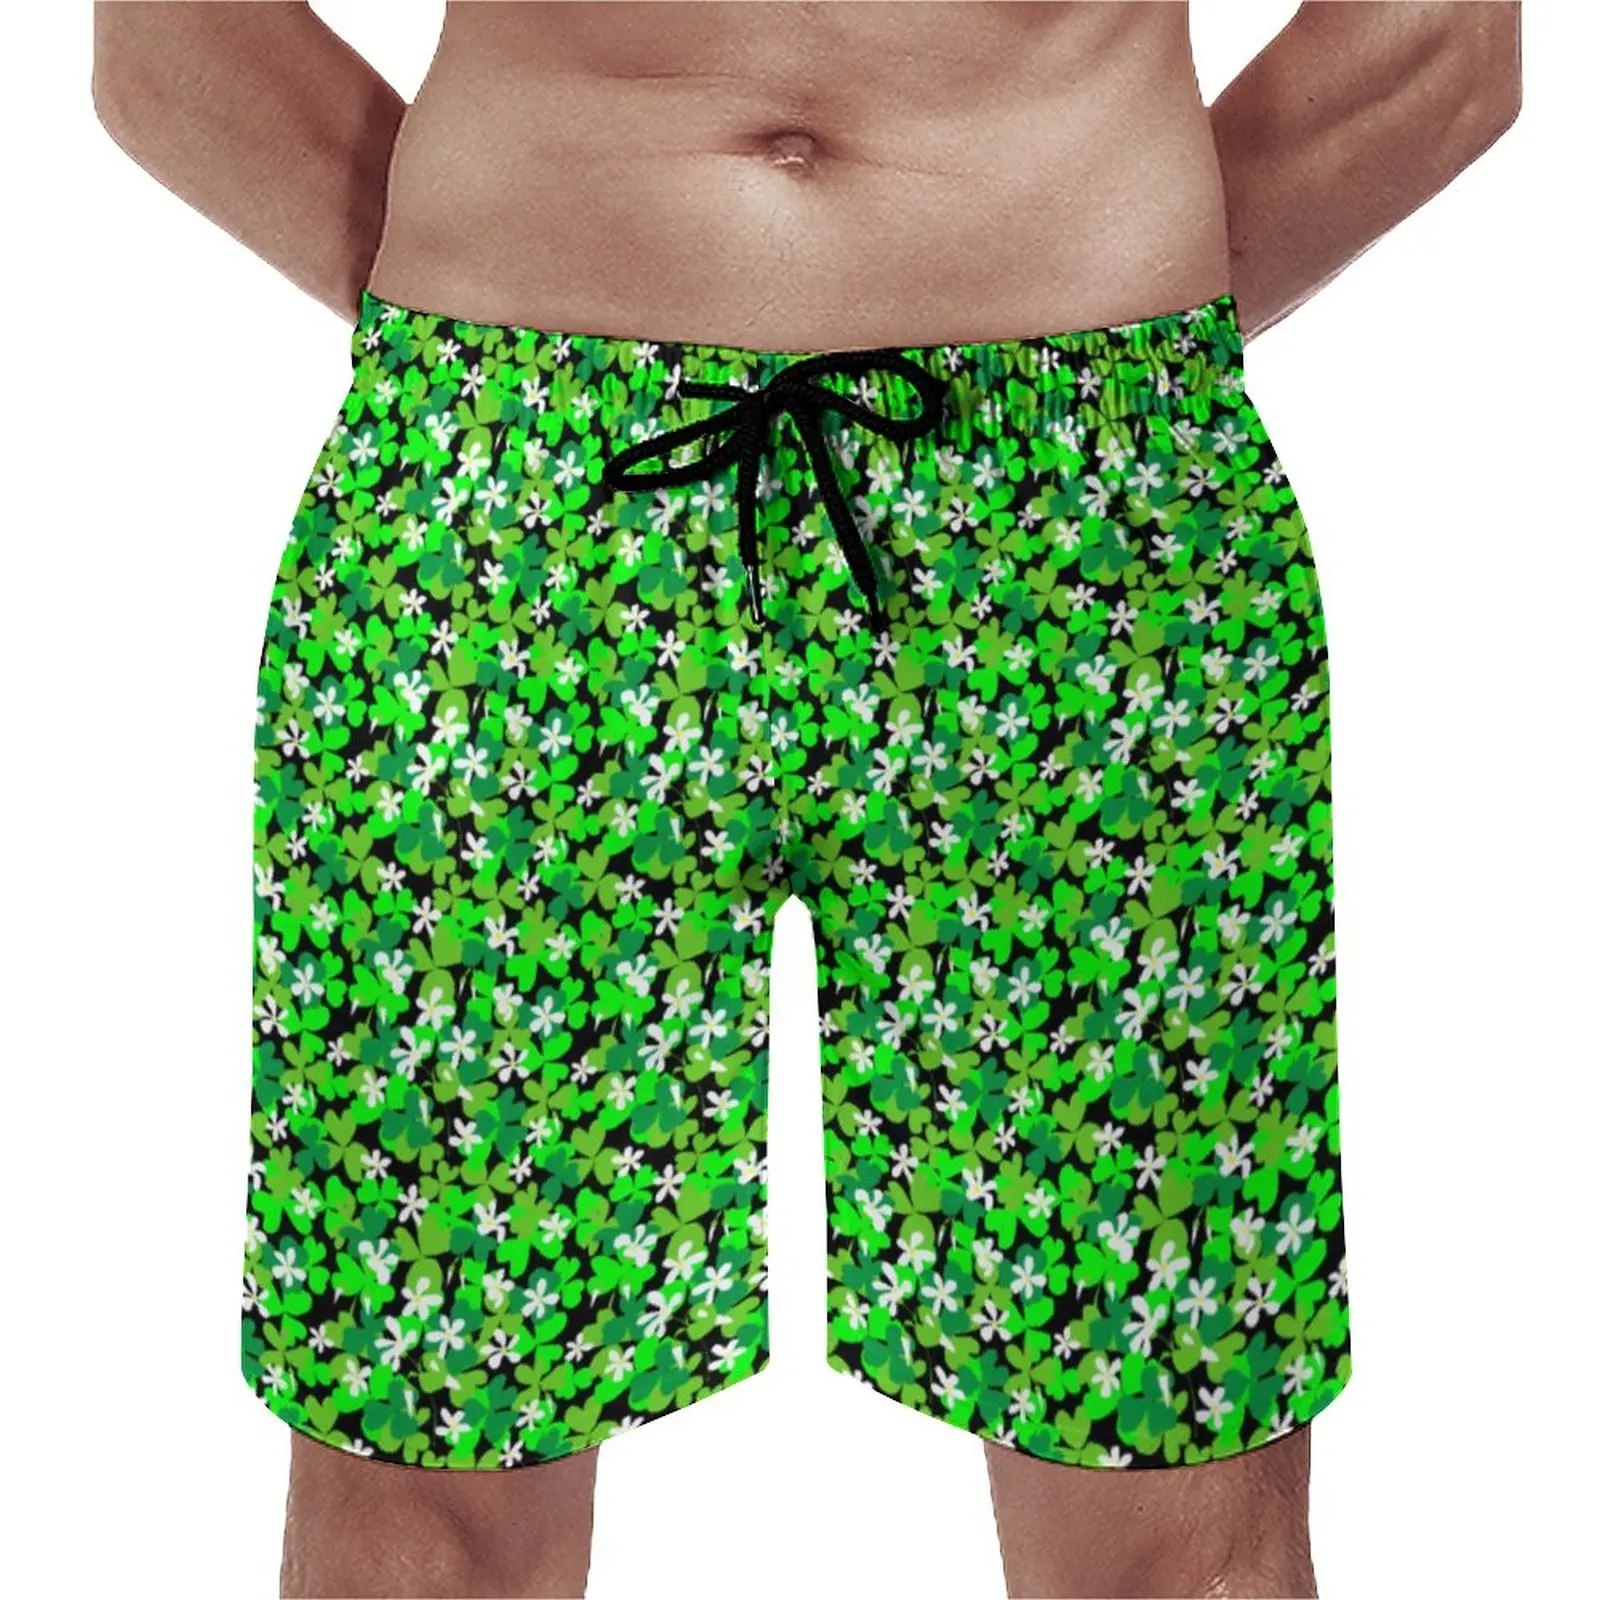 

Шорты пляжные мужские с принтом зеленых листьев, удобные короткие штаны для бега, забавные пляжные трусы на удачу, большие размеры